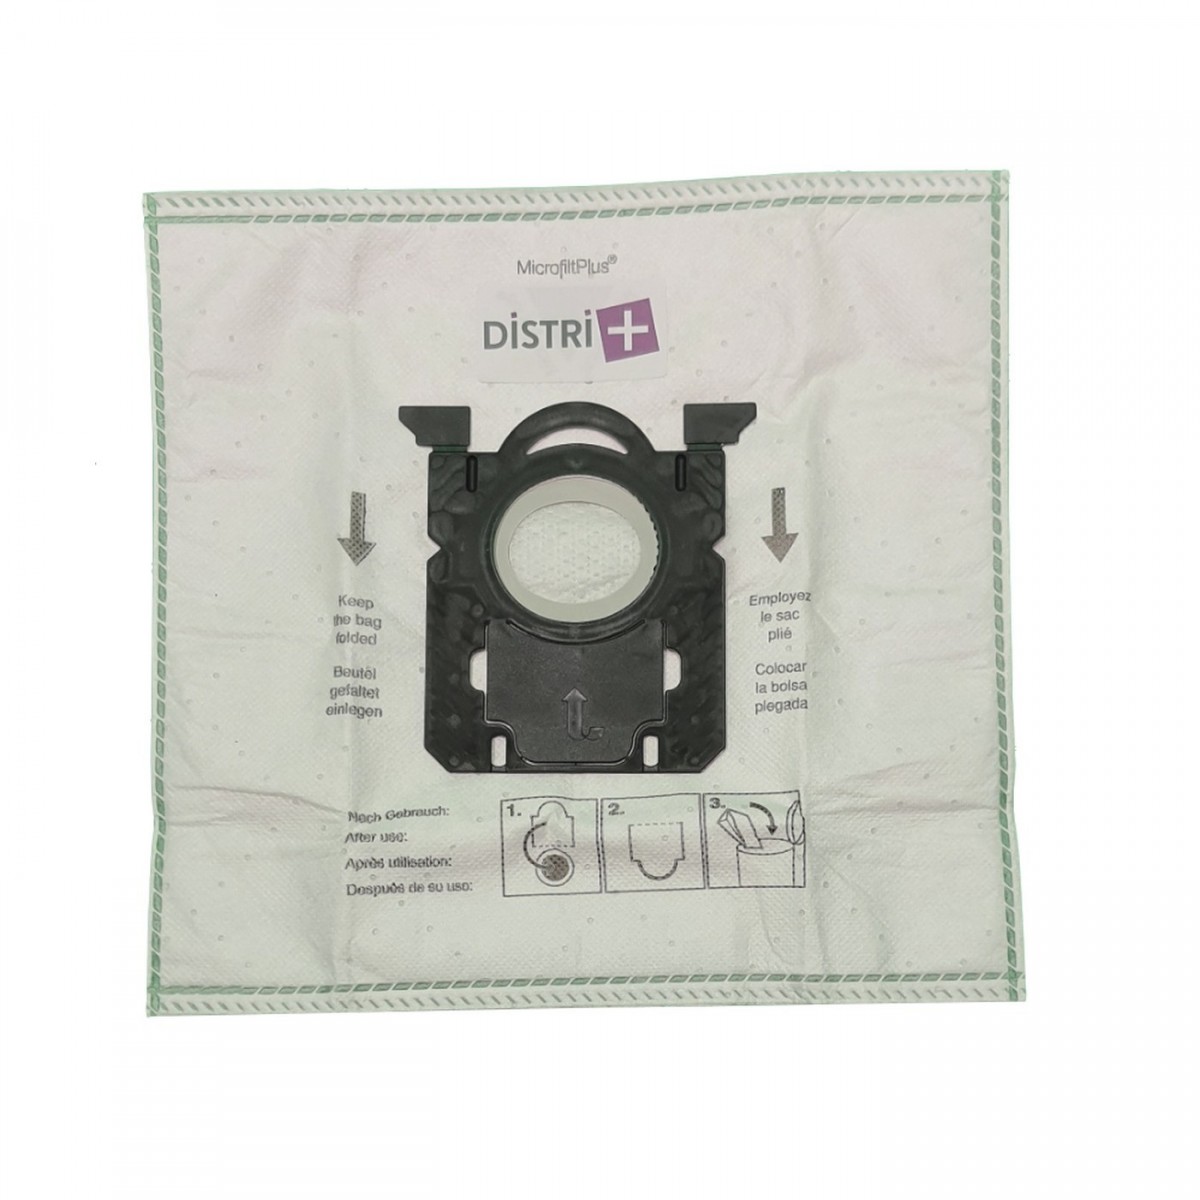 Sac aspirateur compatible Philips Electrolux 10 sacs microfibre